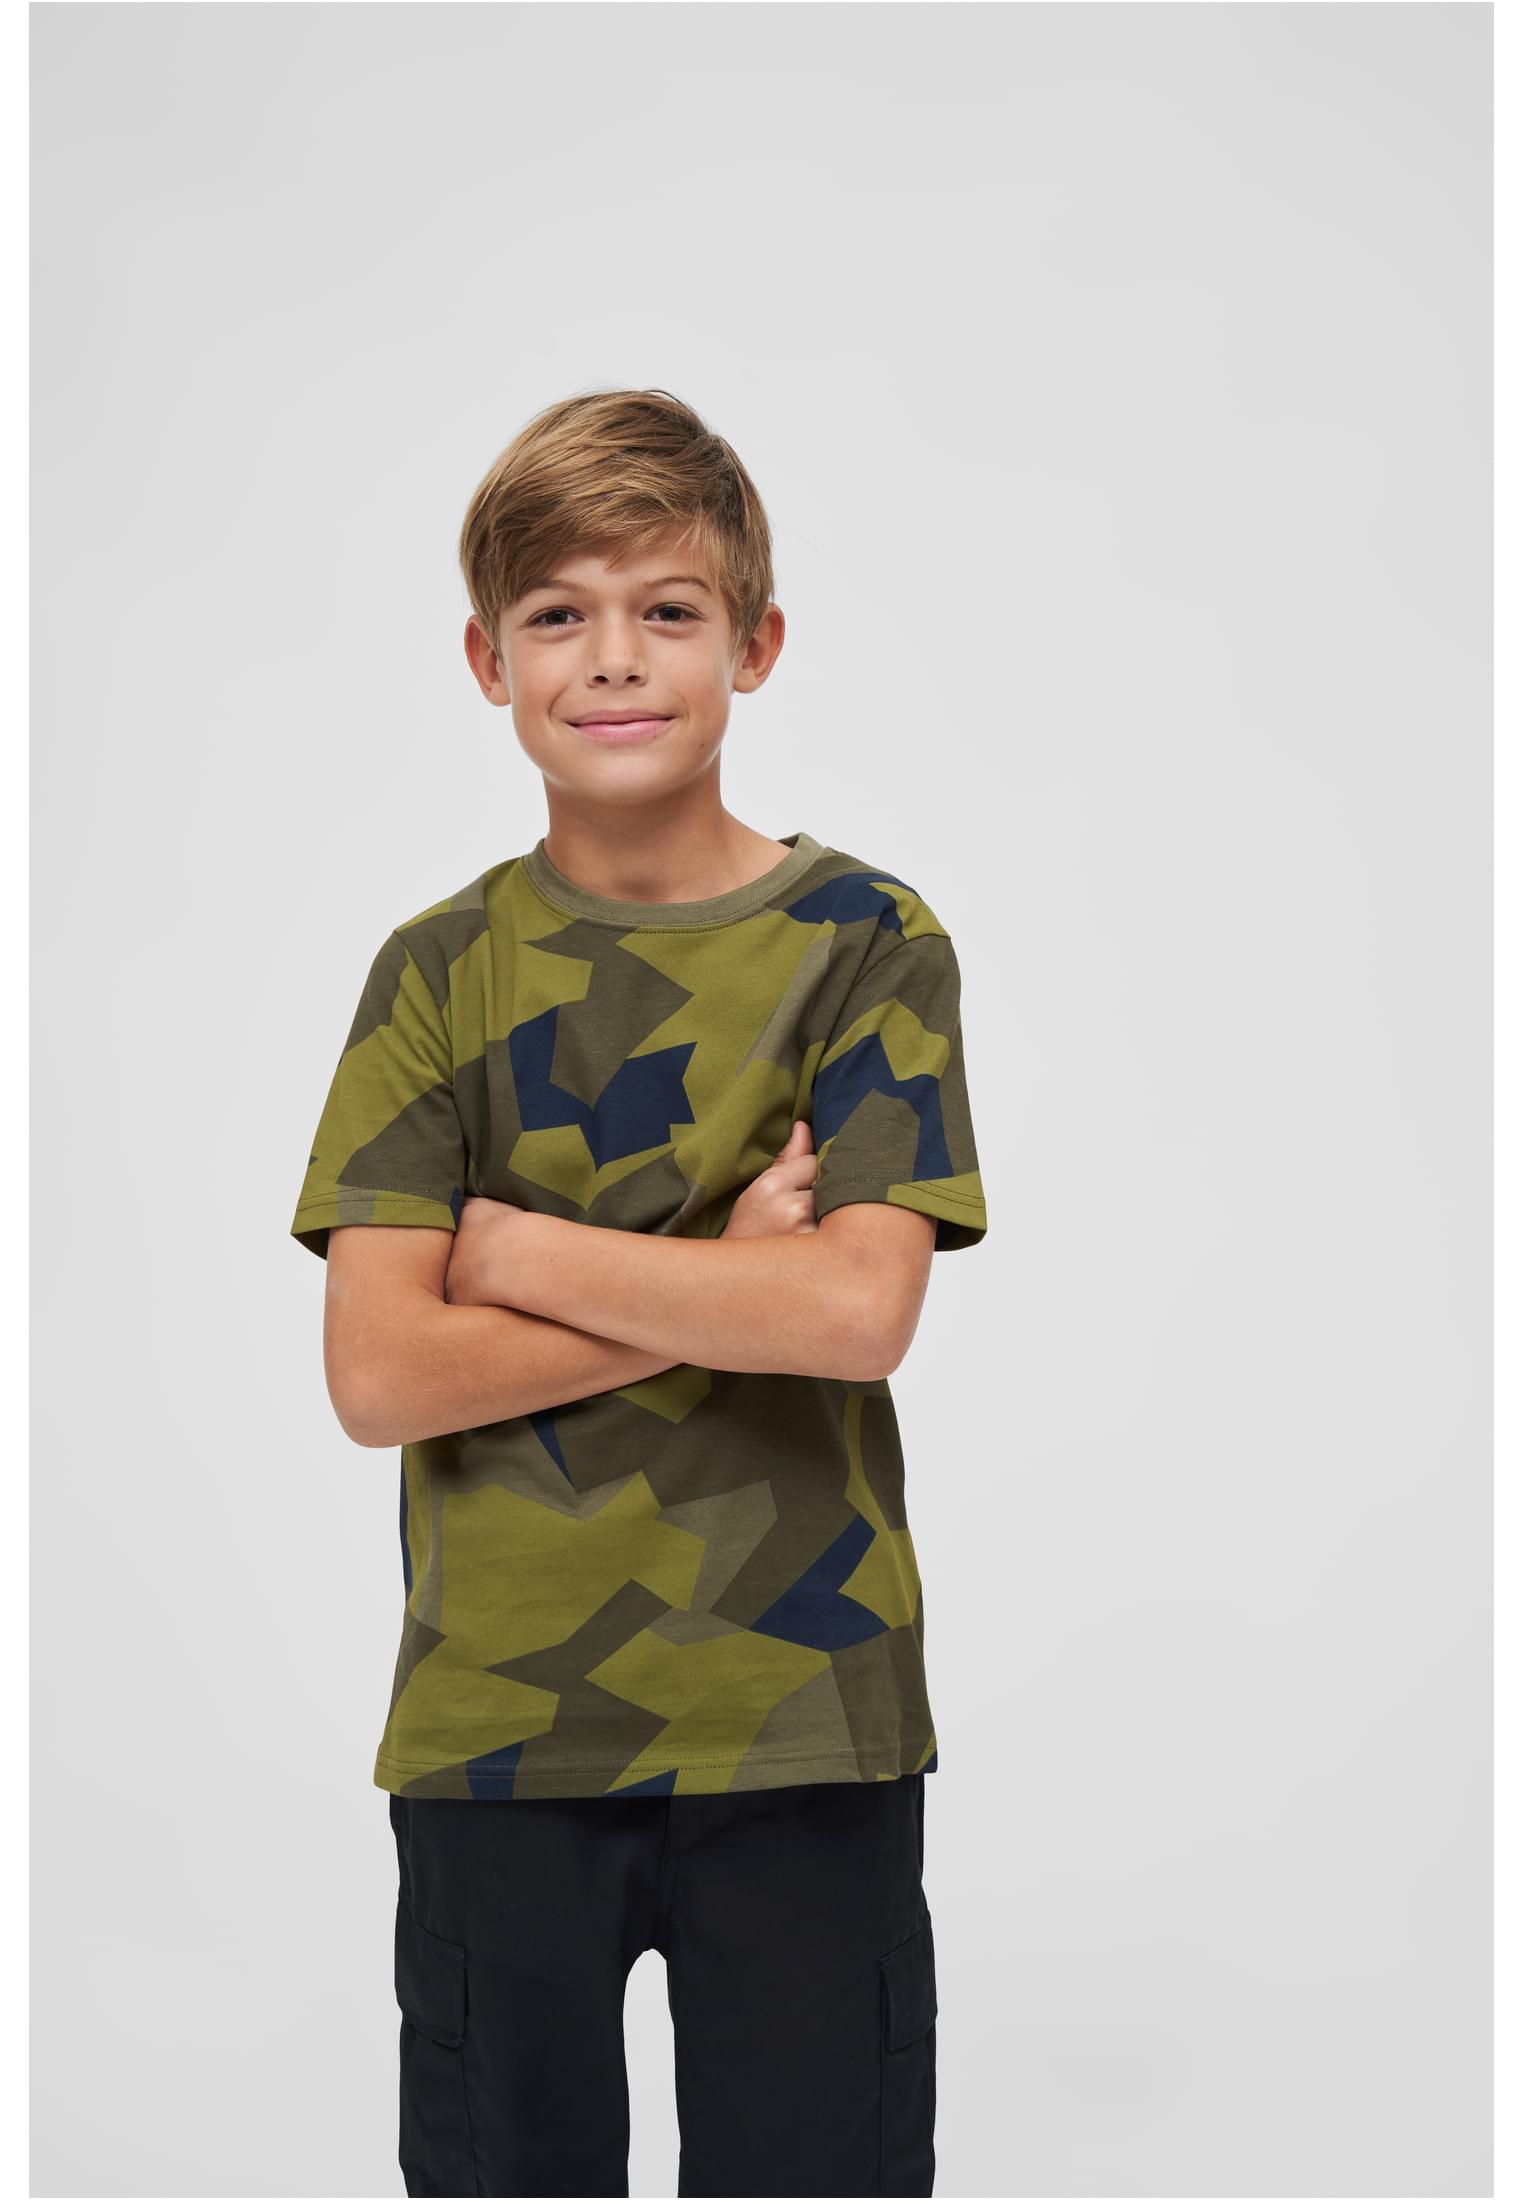 T-Shirts Kids T-Shirt in Farbe swedish camo